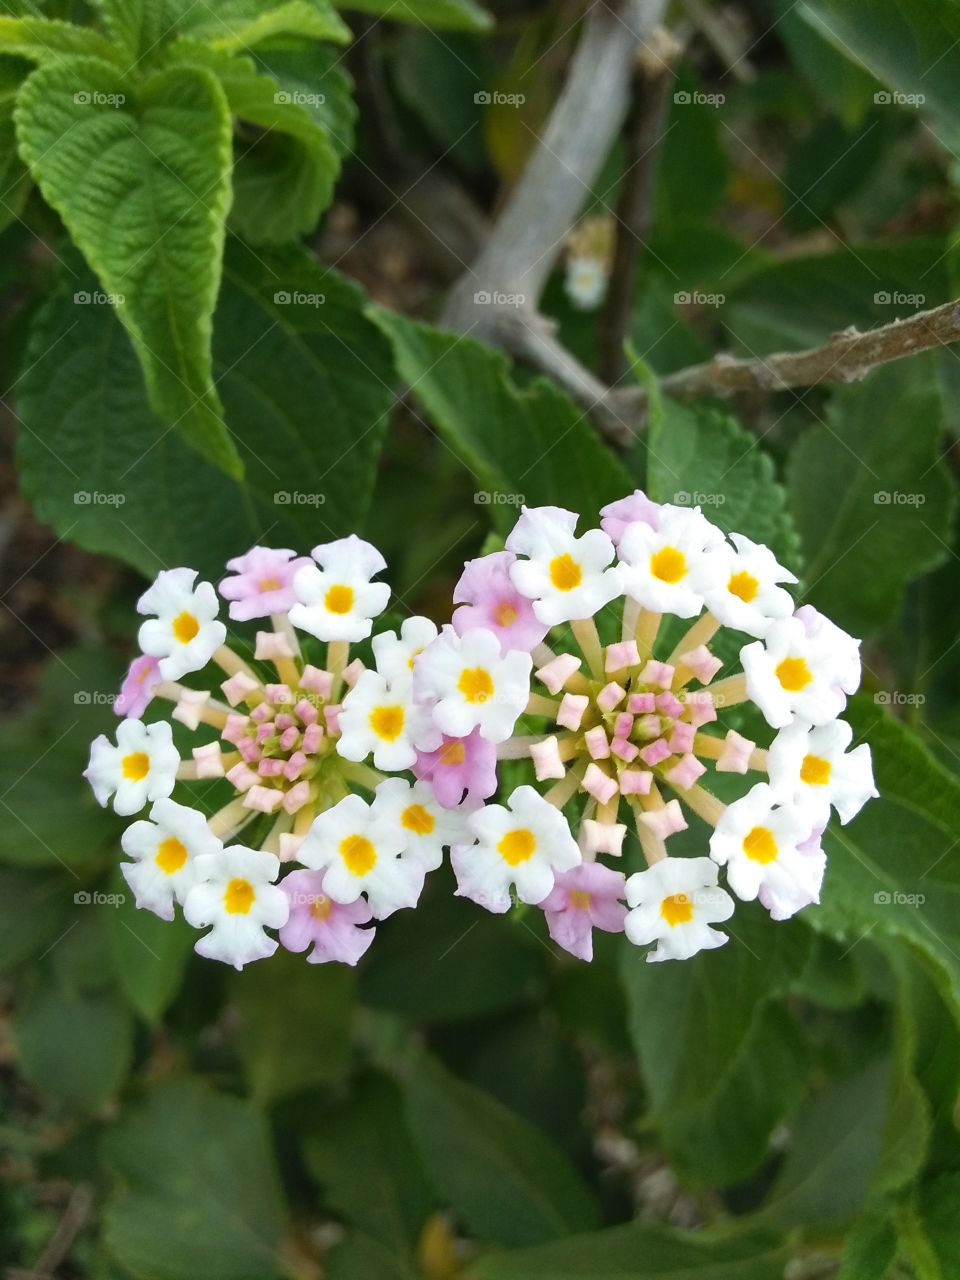 beautiful flower